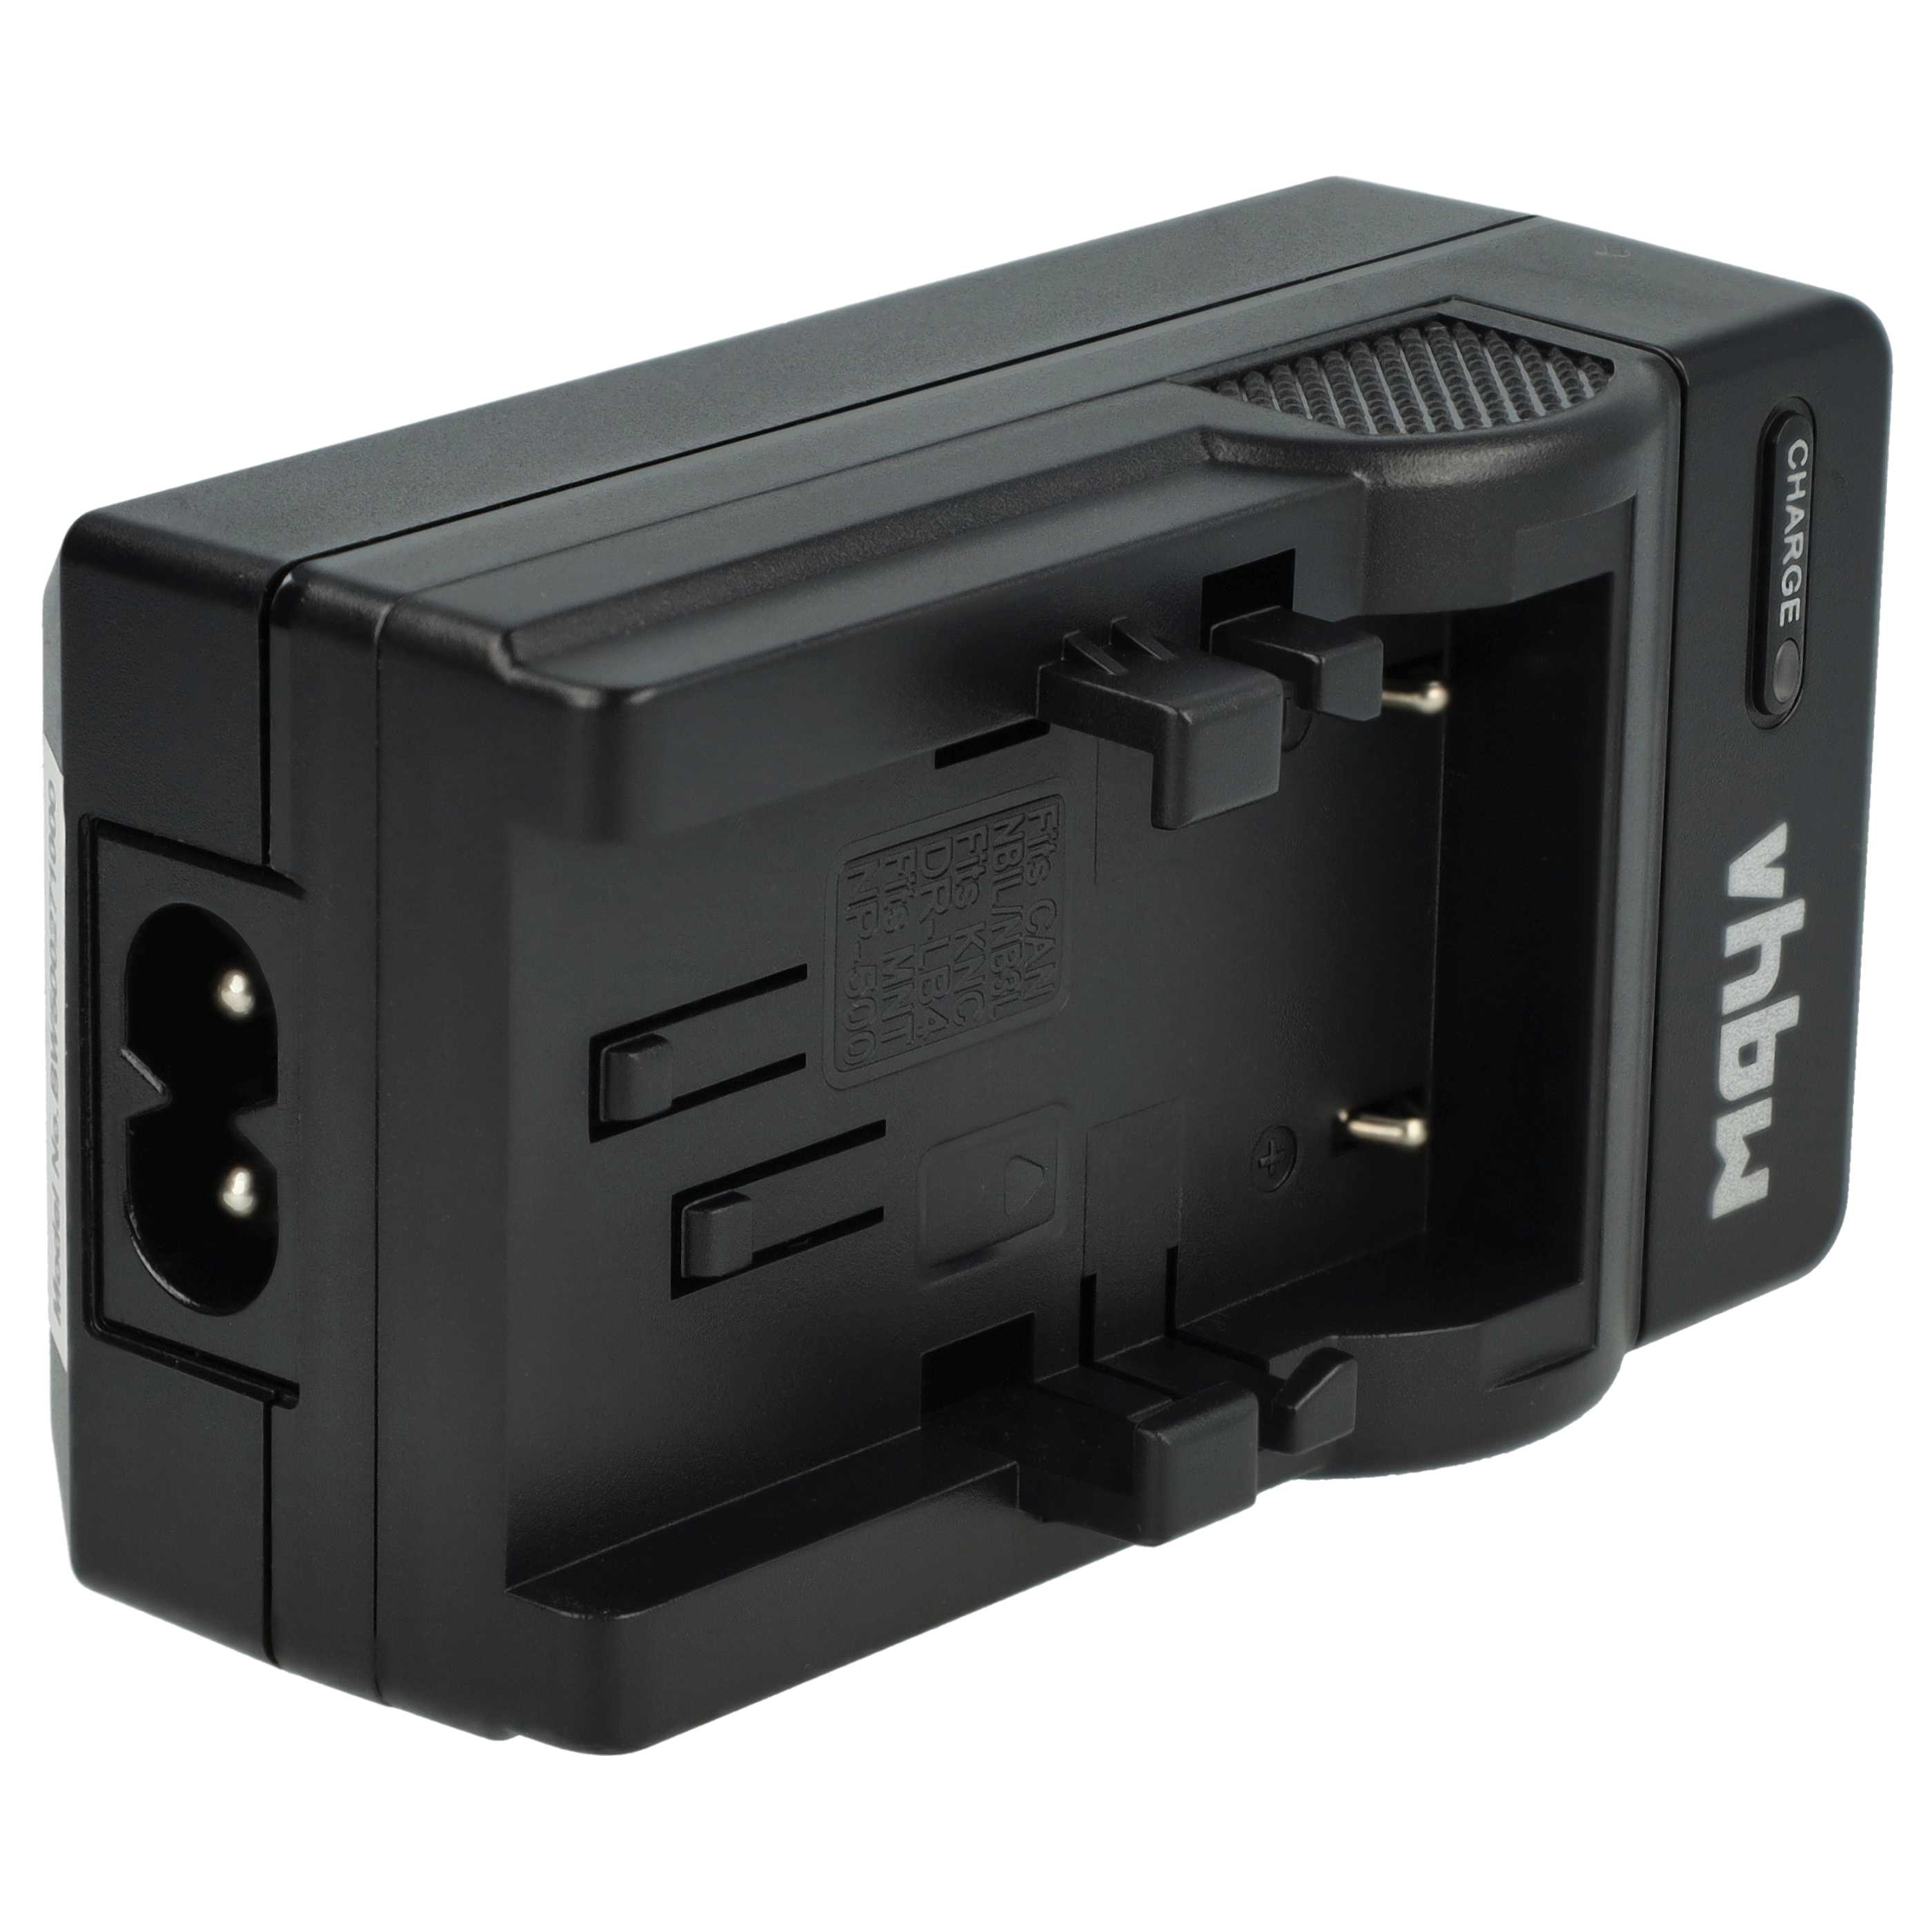 Akku Ladegerät passend für Digitalkamera und weitere - 0,6 A, 4,2 V